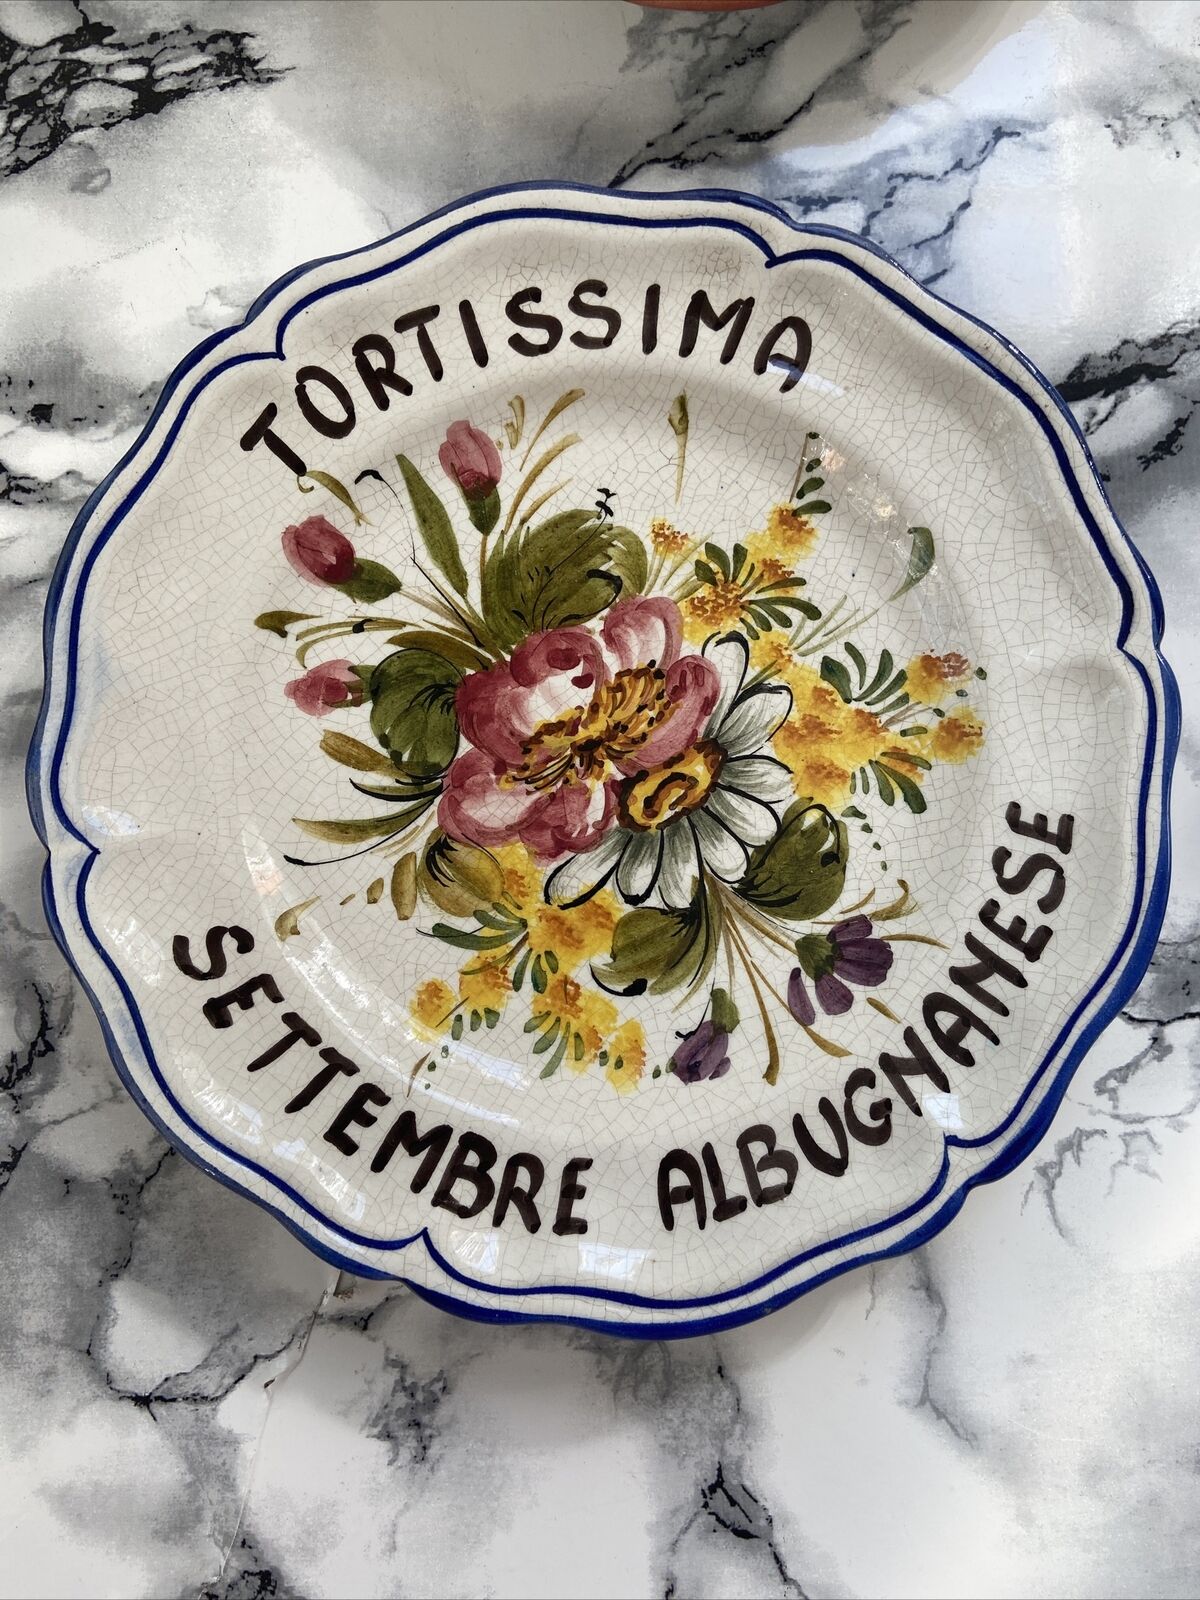 Piatti Tortissima Albugnanese Ceramiche Bassano